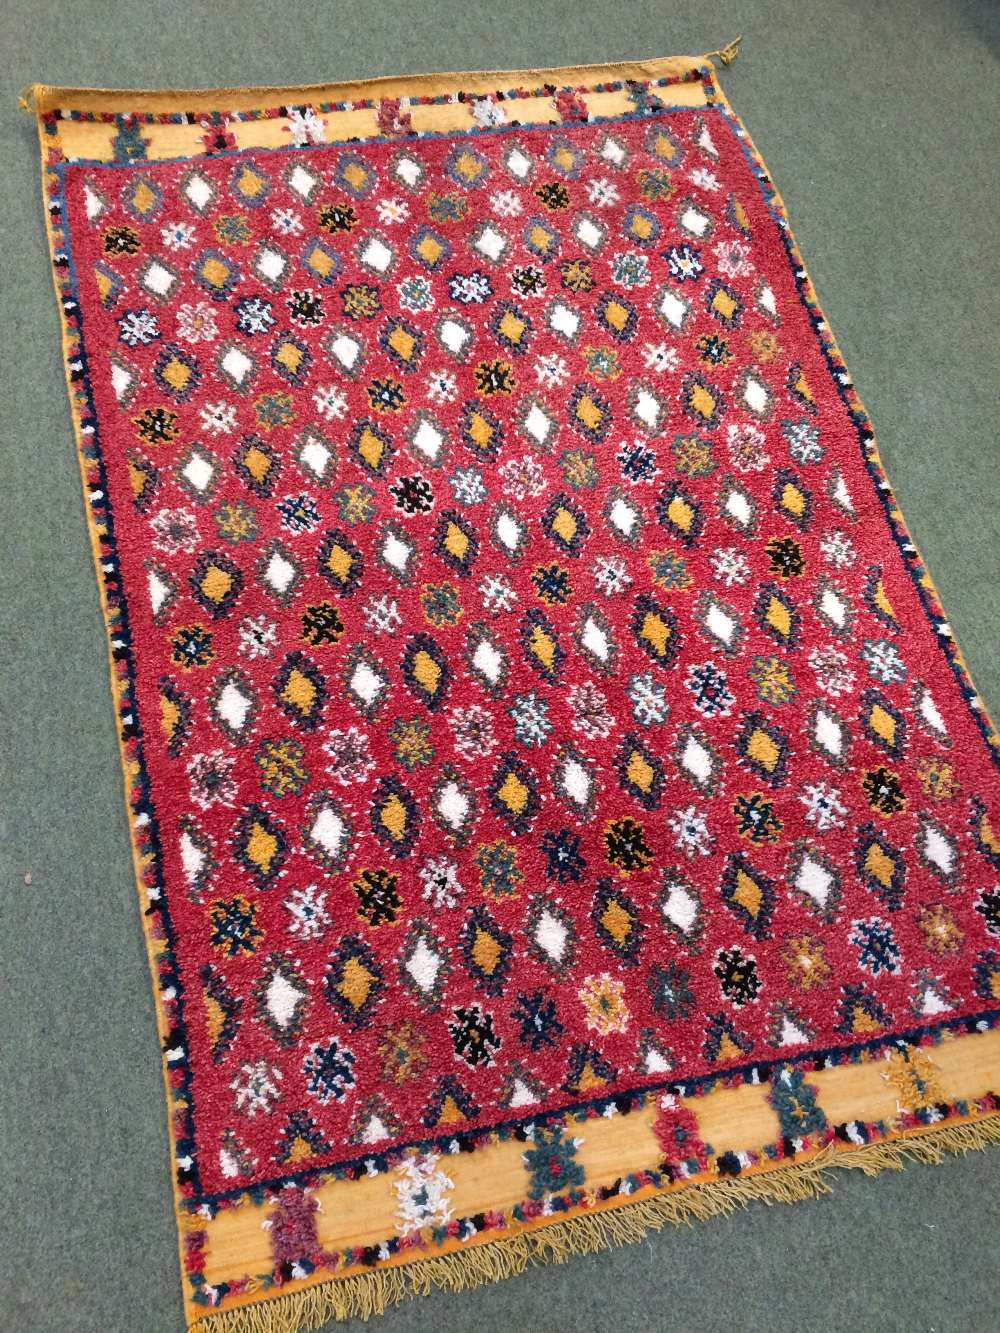 Vintage Moroccan rug circa 1930s 1.50 X 0.96m - Image 2 of 2